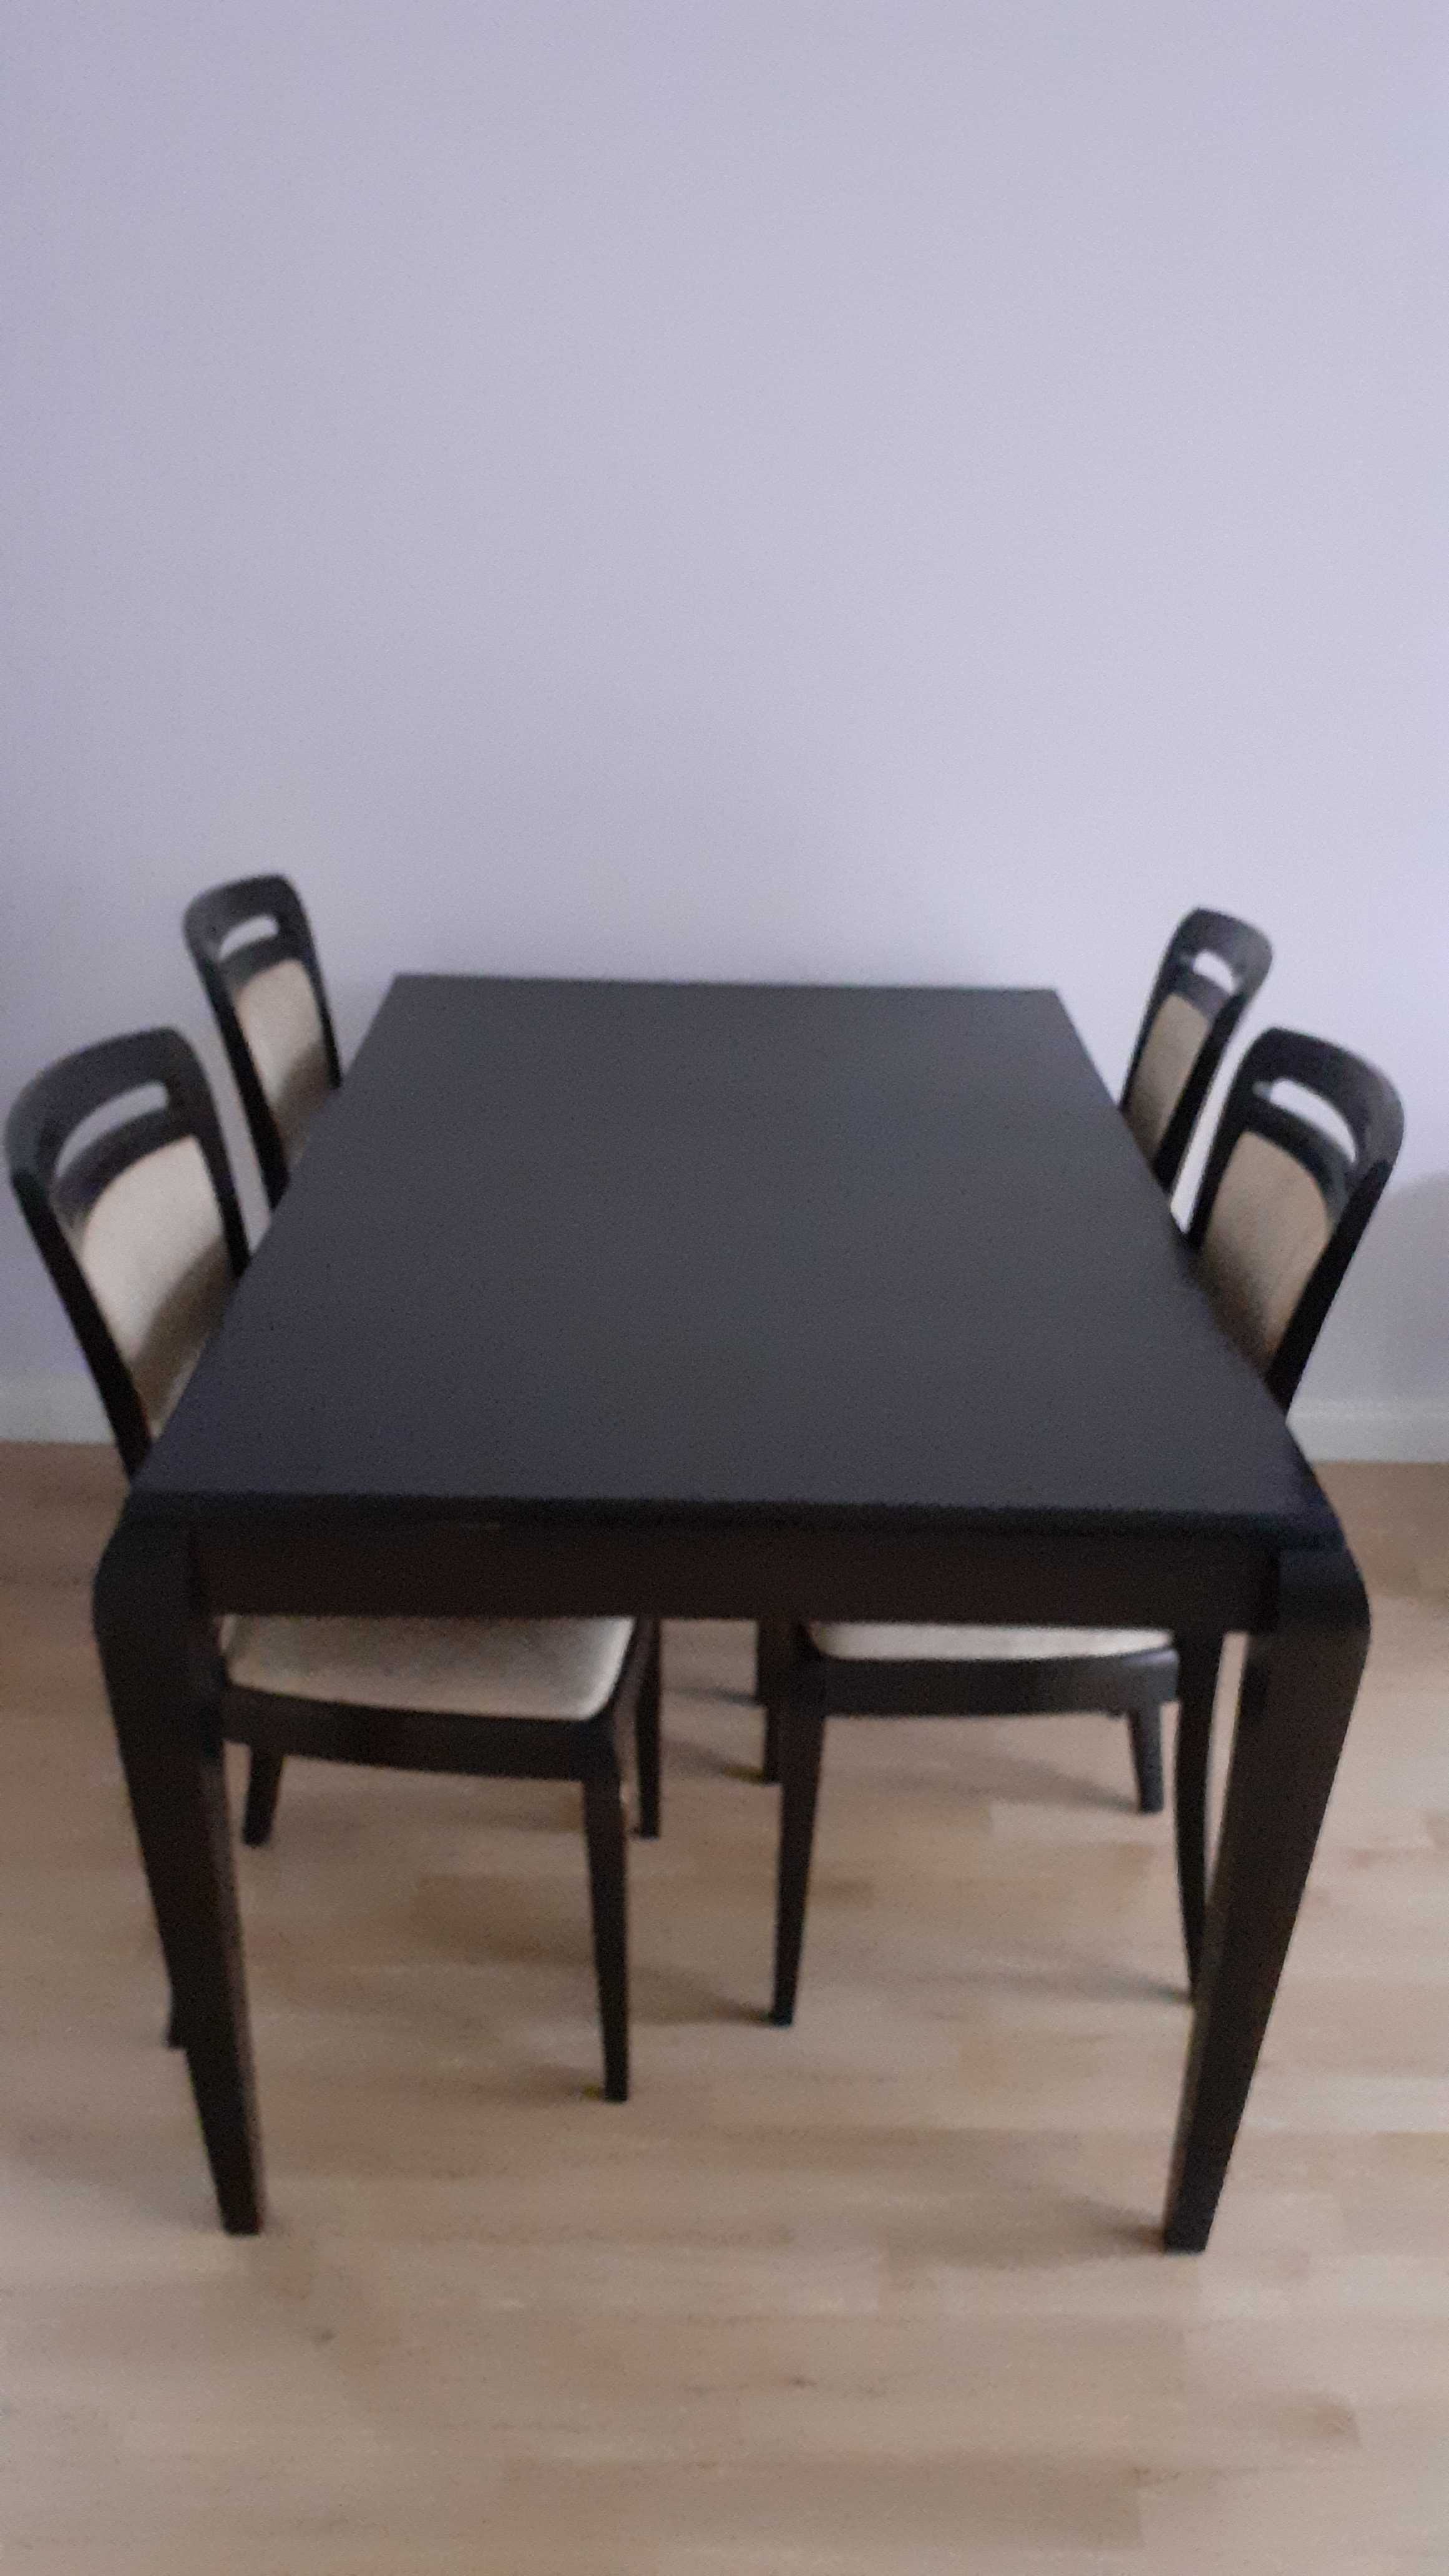 Duży stół rozkładany + 4 wygodne krzesła